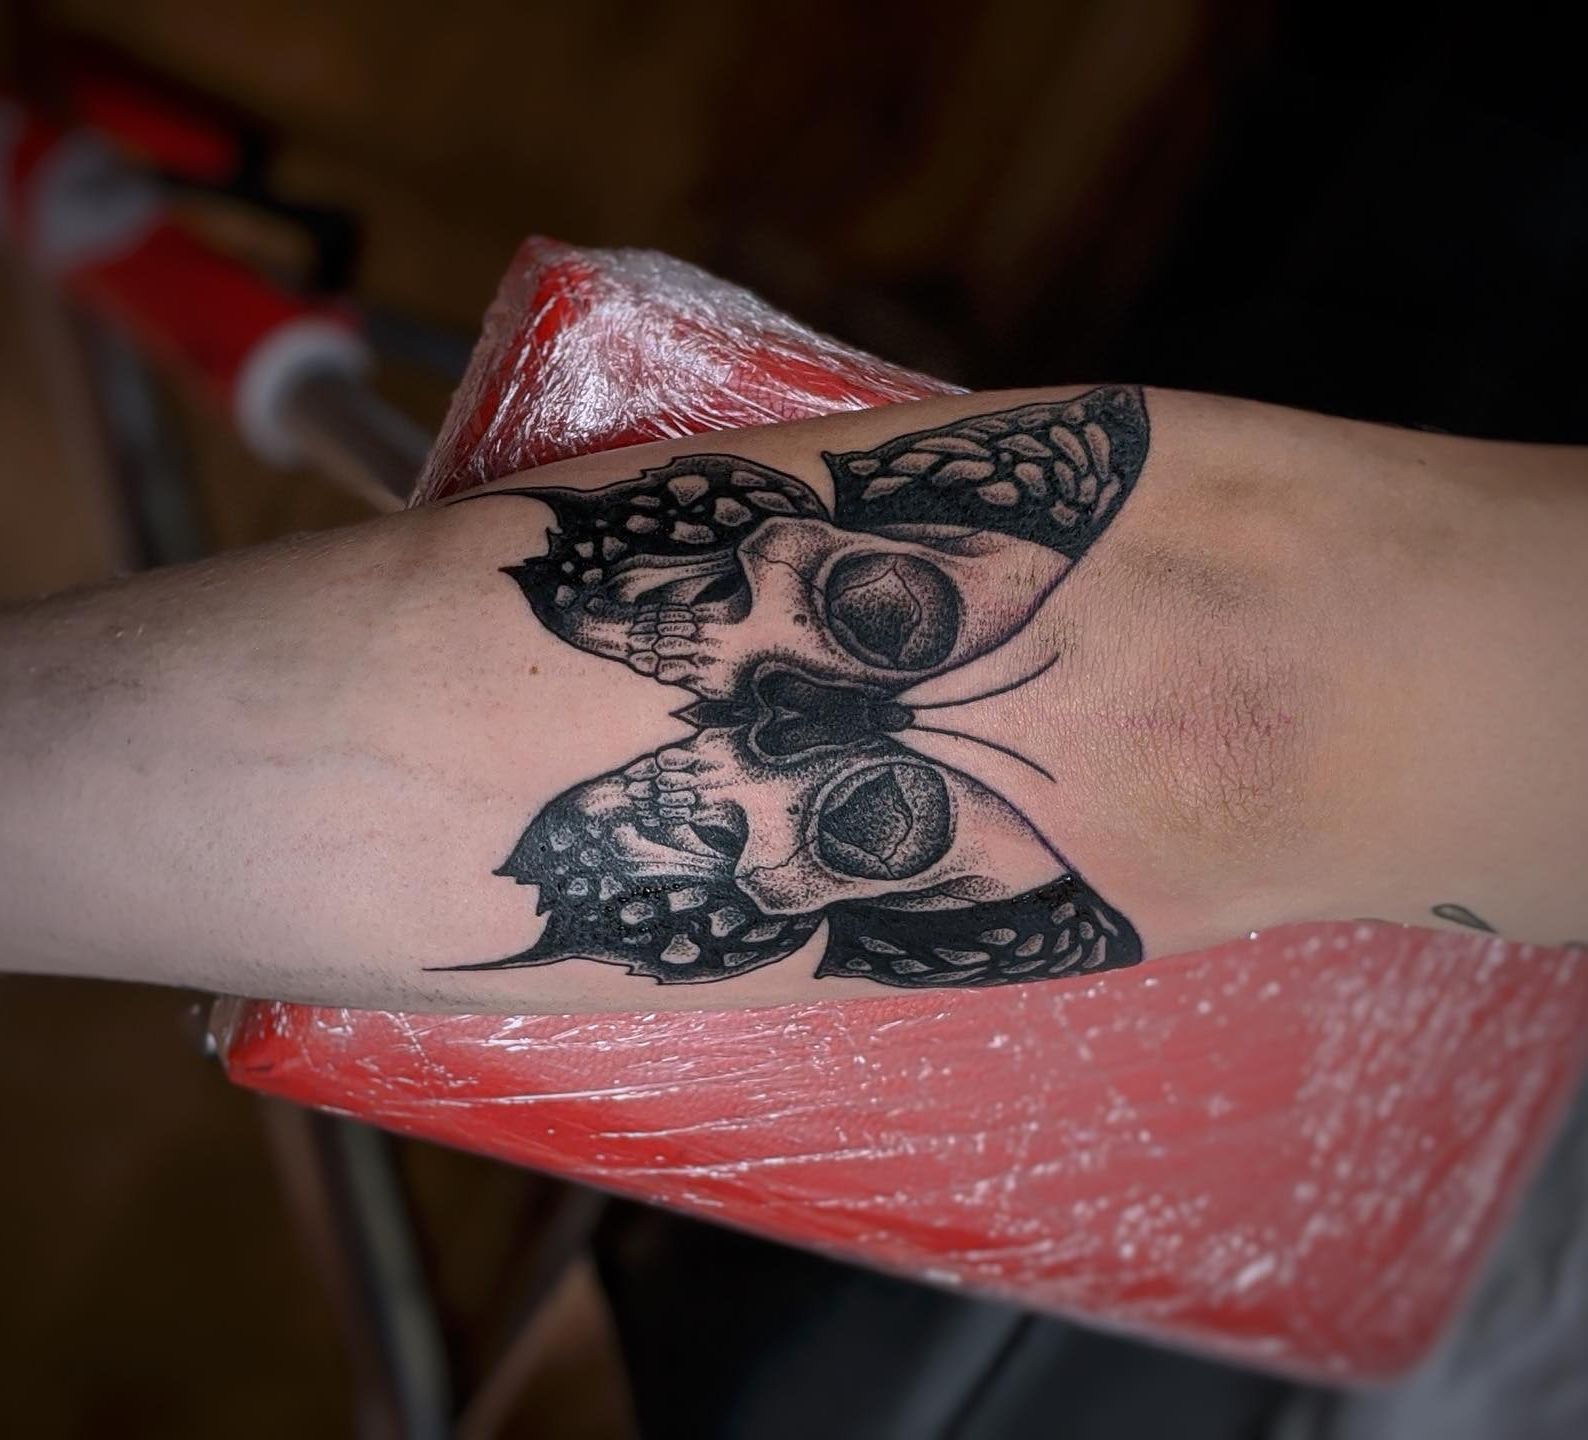 Tetování je láska na celý život, nechte si ho udělat originálně